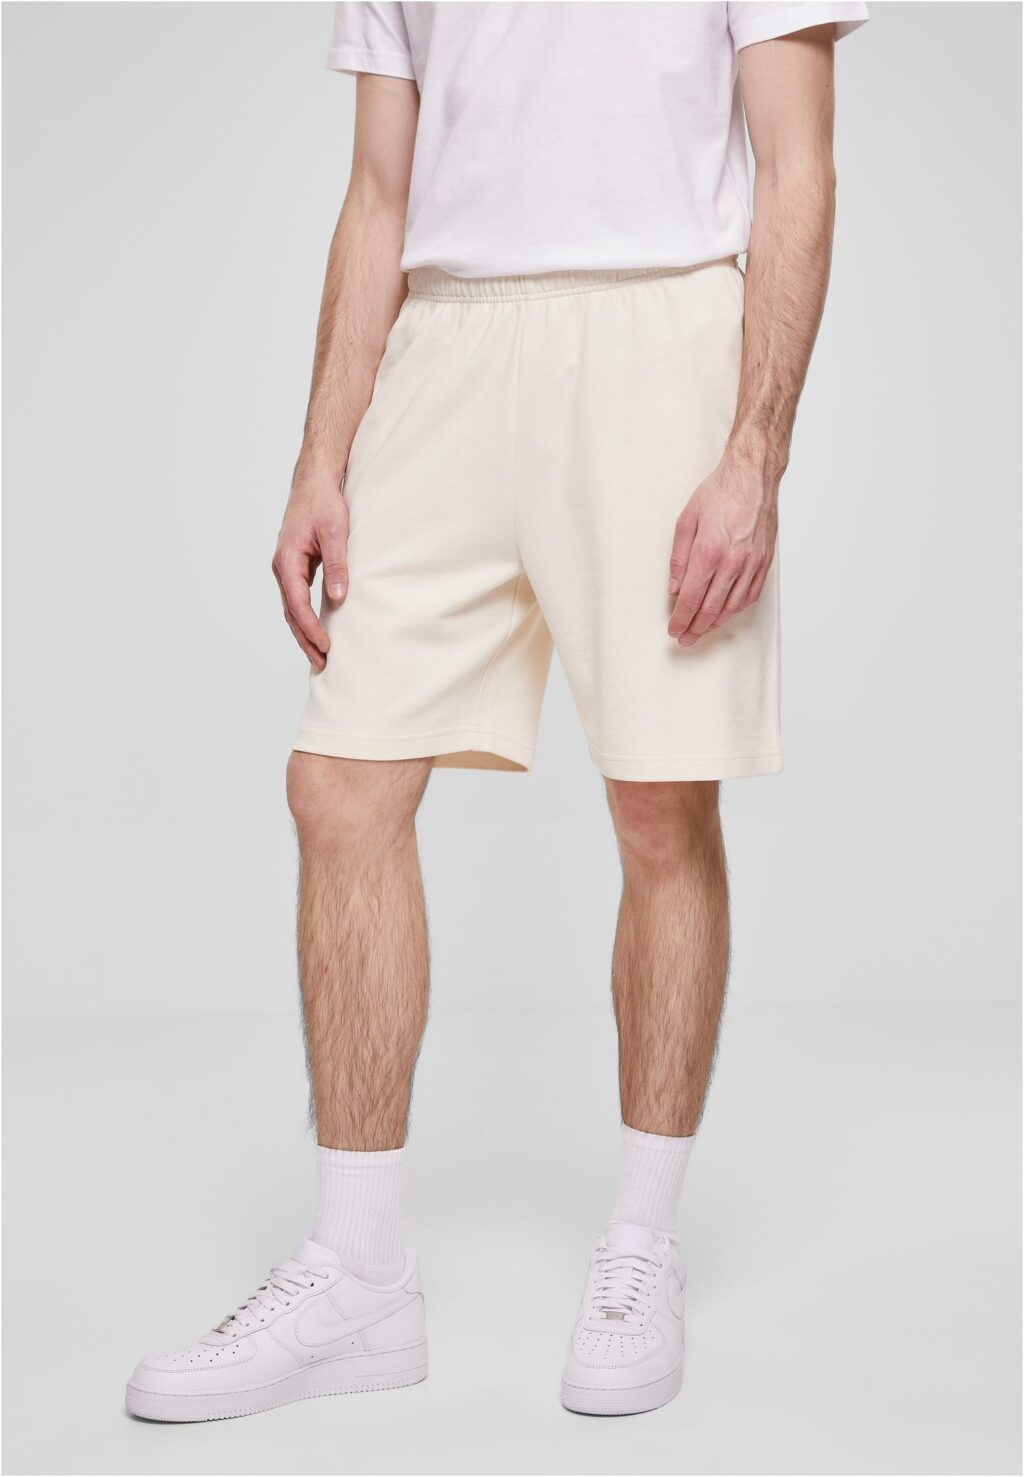 Urban Classics New Shorts whitesand TB6297